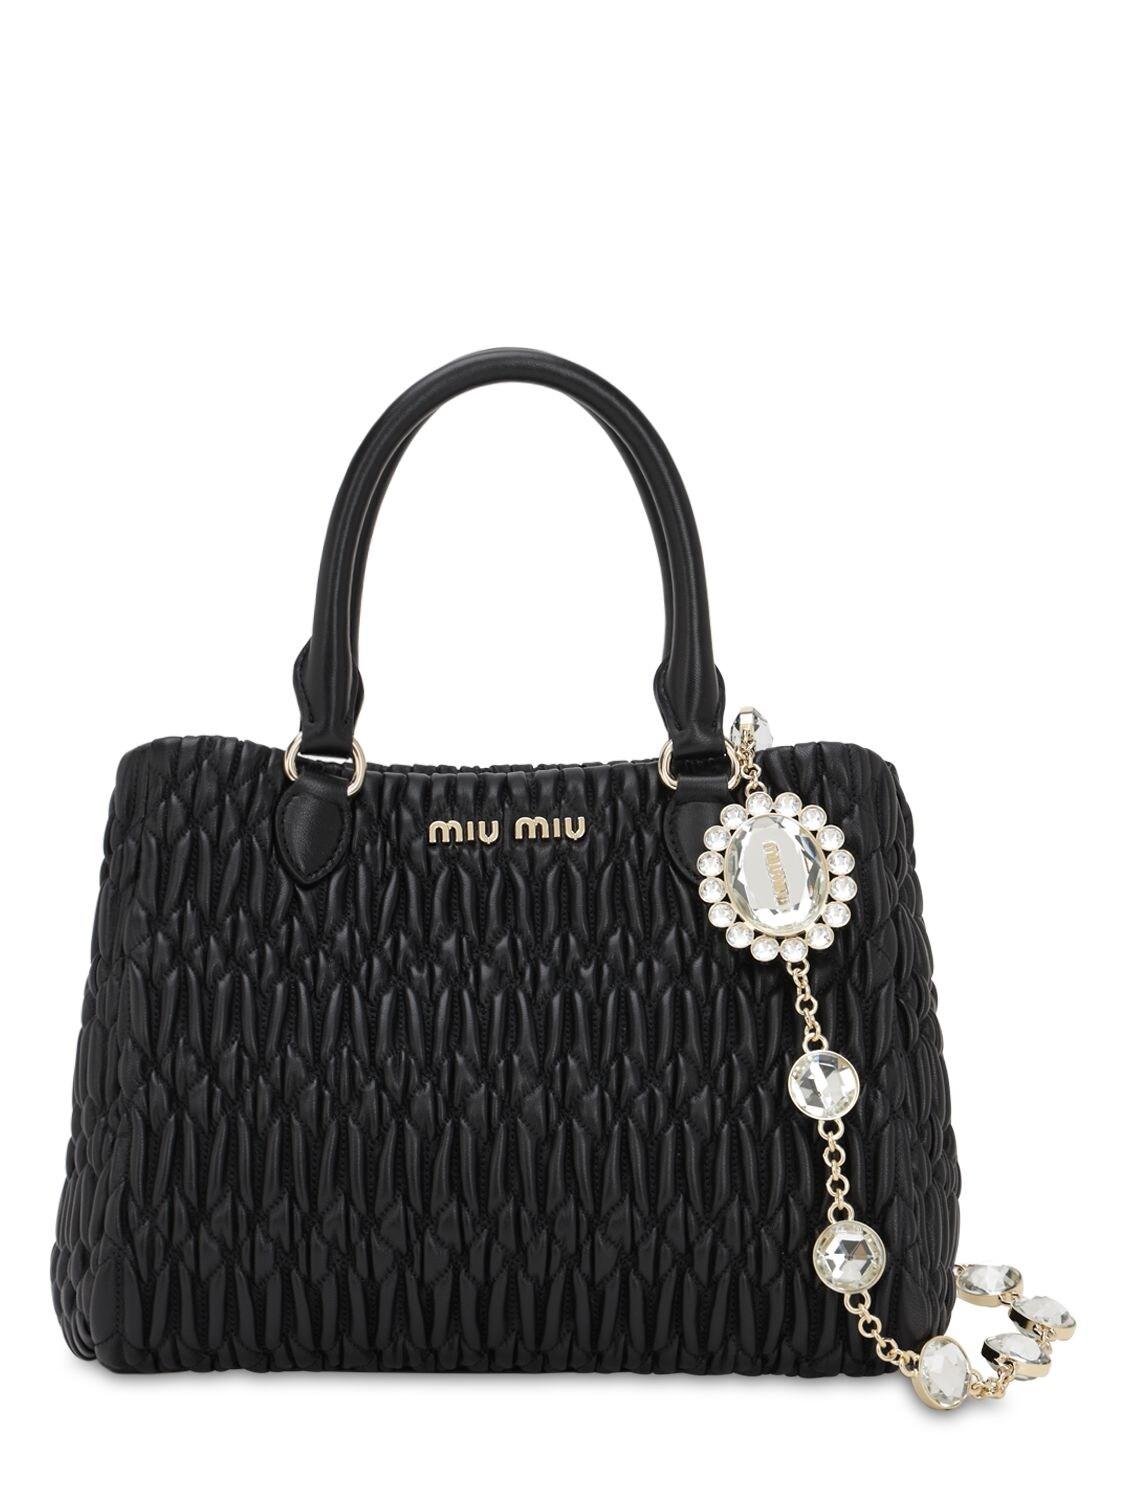 Miu Miu Satin Matelassé Leather Top Handle Bag in Black - Lyst